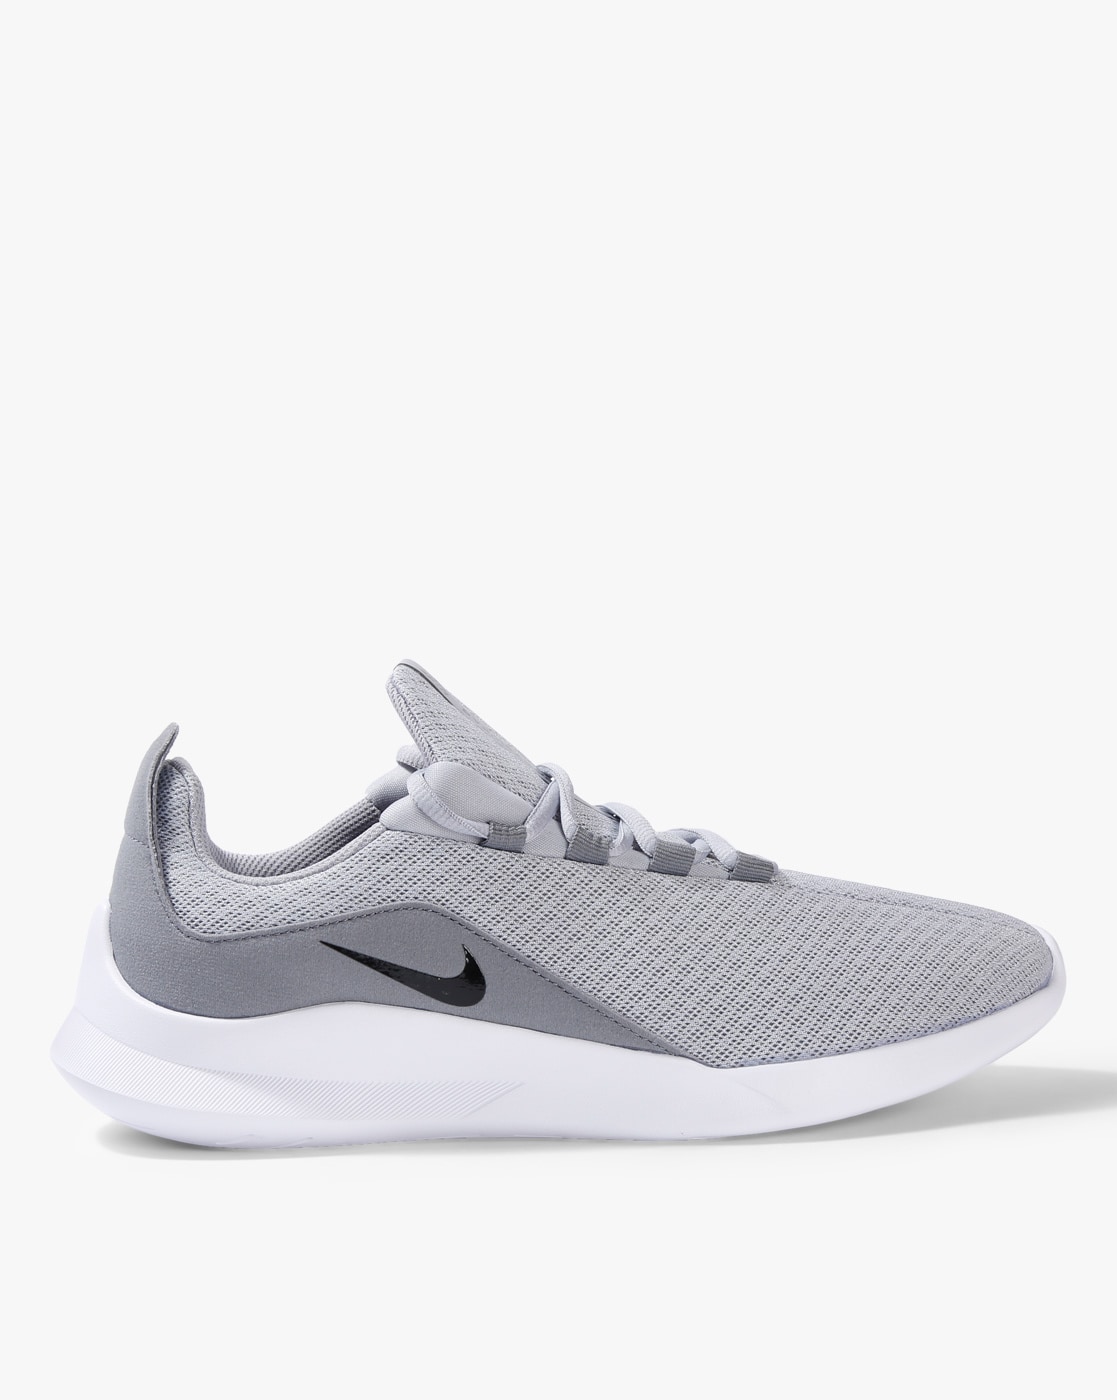 men's grey athletic shoes